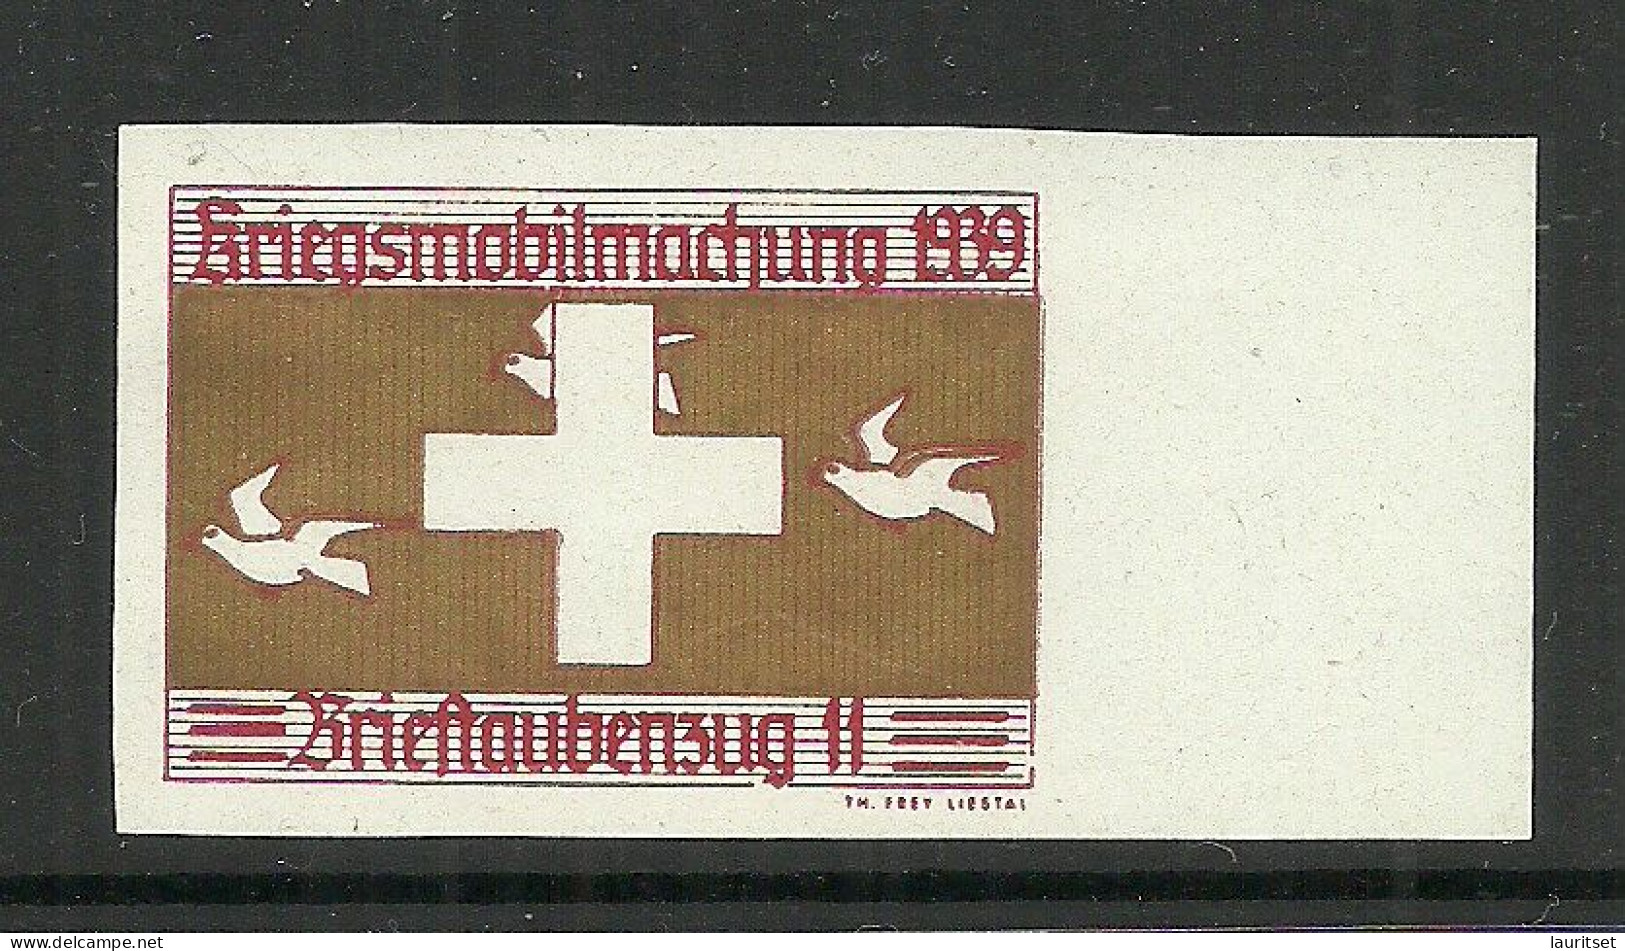 SCHWEIZ Switzerland 1939  WWII Soldatenmarken Brieftaubendienst Brieftaubenzug 11 Kriegsmobilmachung 1939 MNH - Vignetten